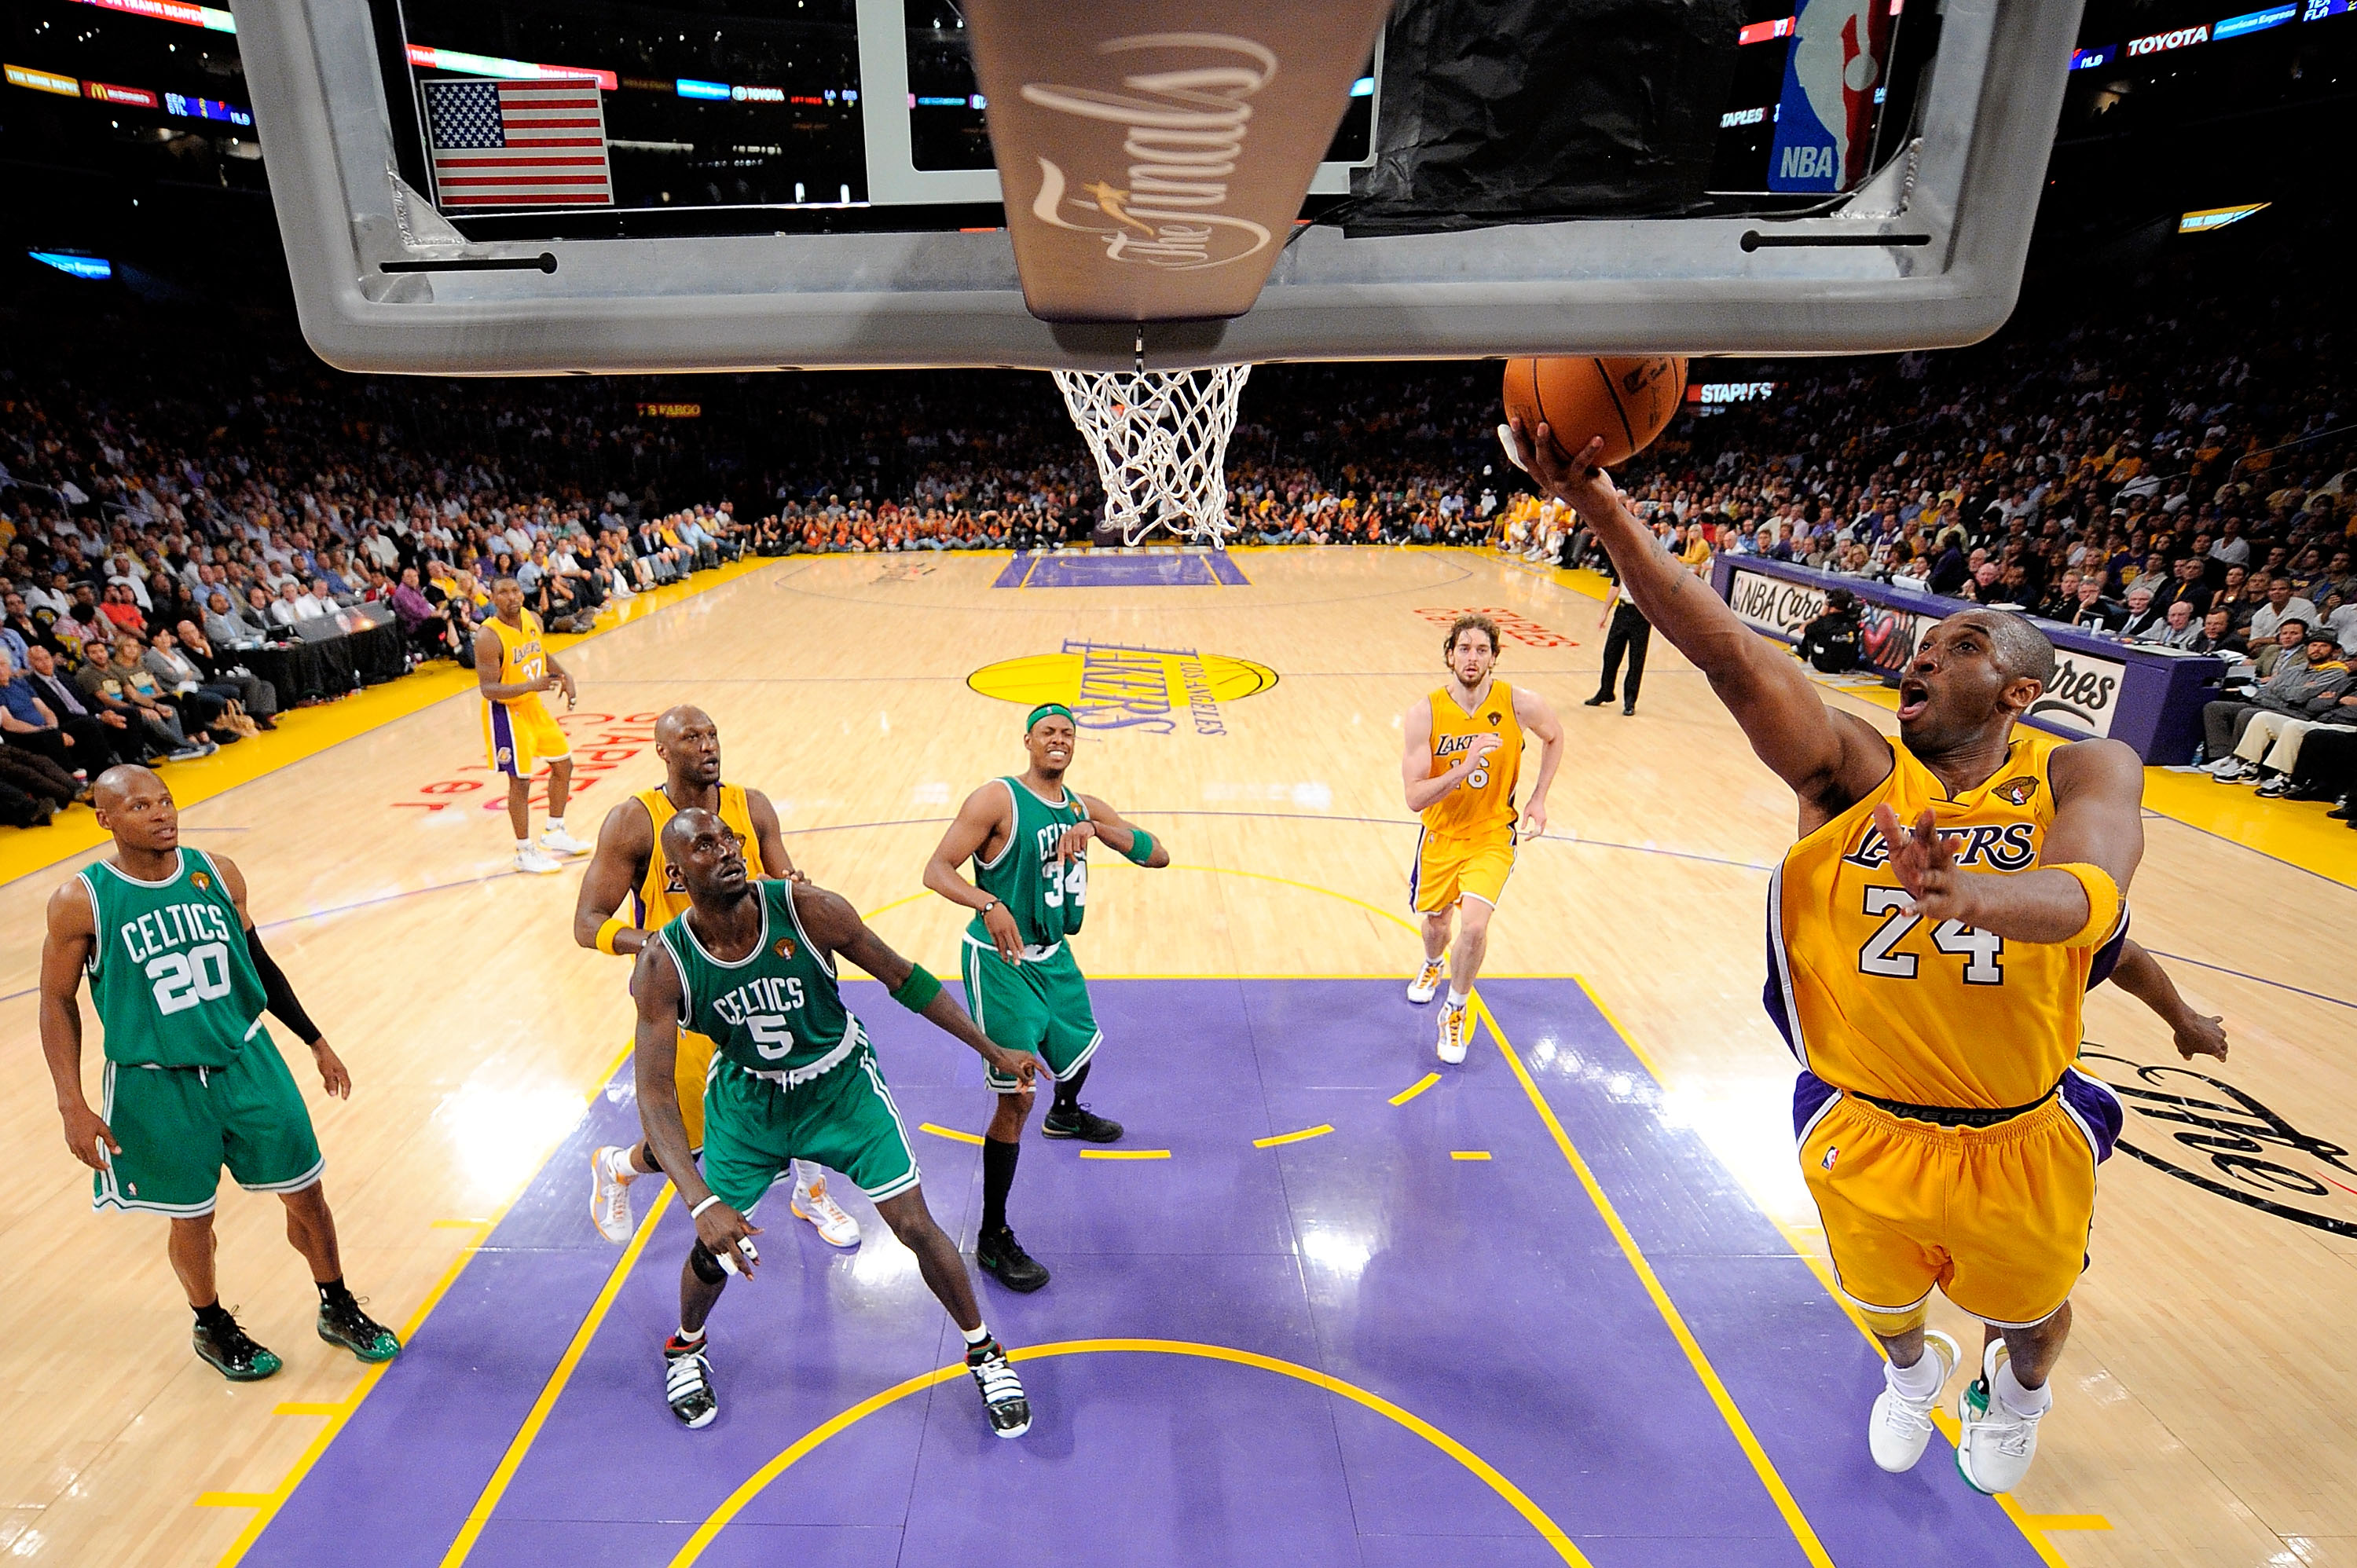 Lakers Vs Celtics Nba Finals 2010 Game 7 Full | Gameswalls.org